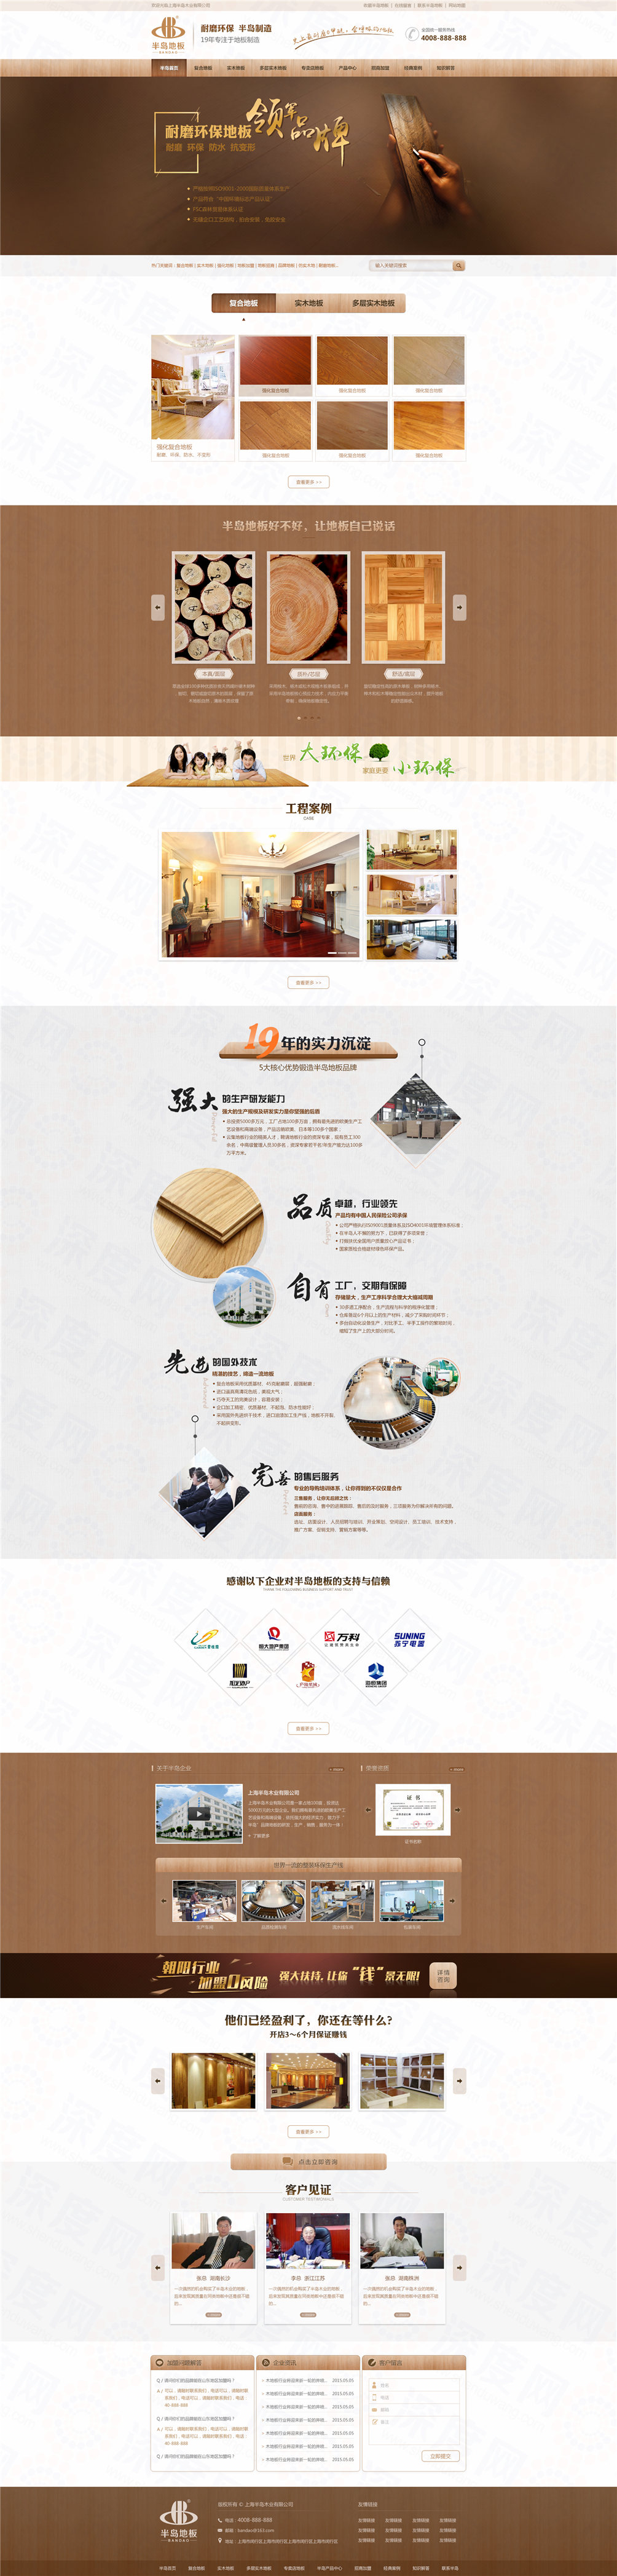 上海半岛木质地板营销型网站建设案例